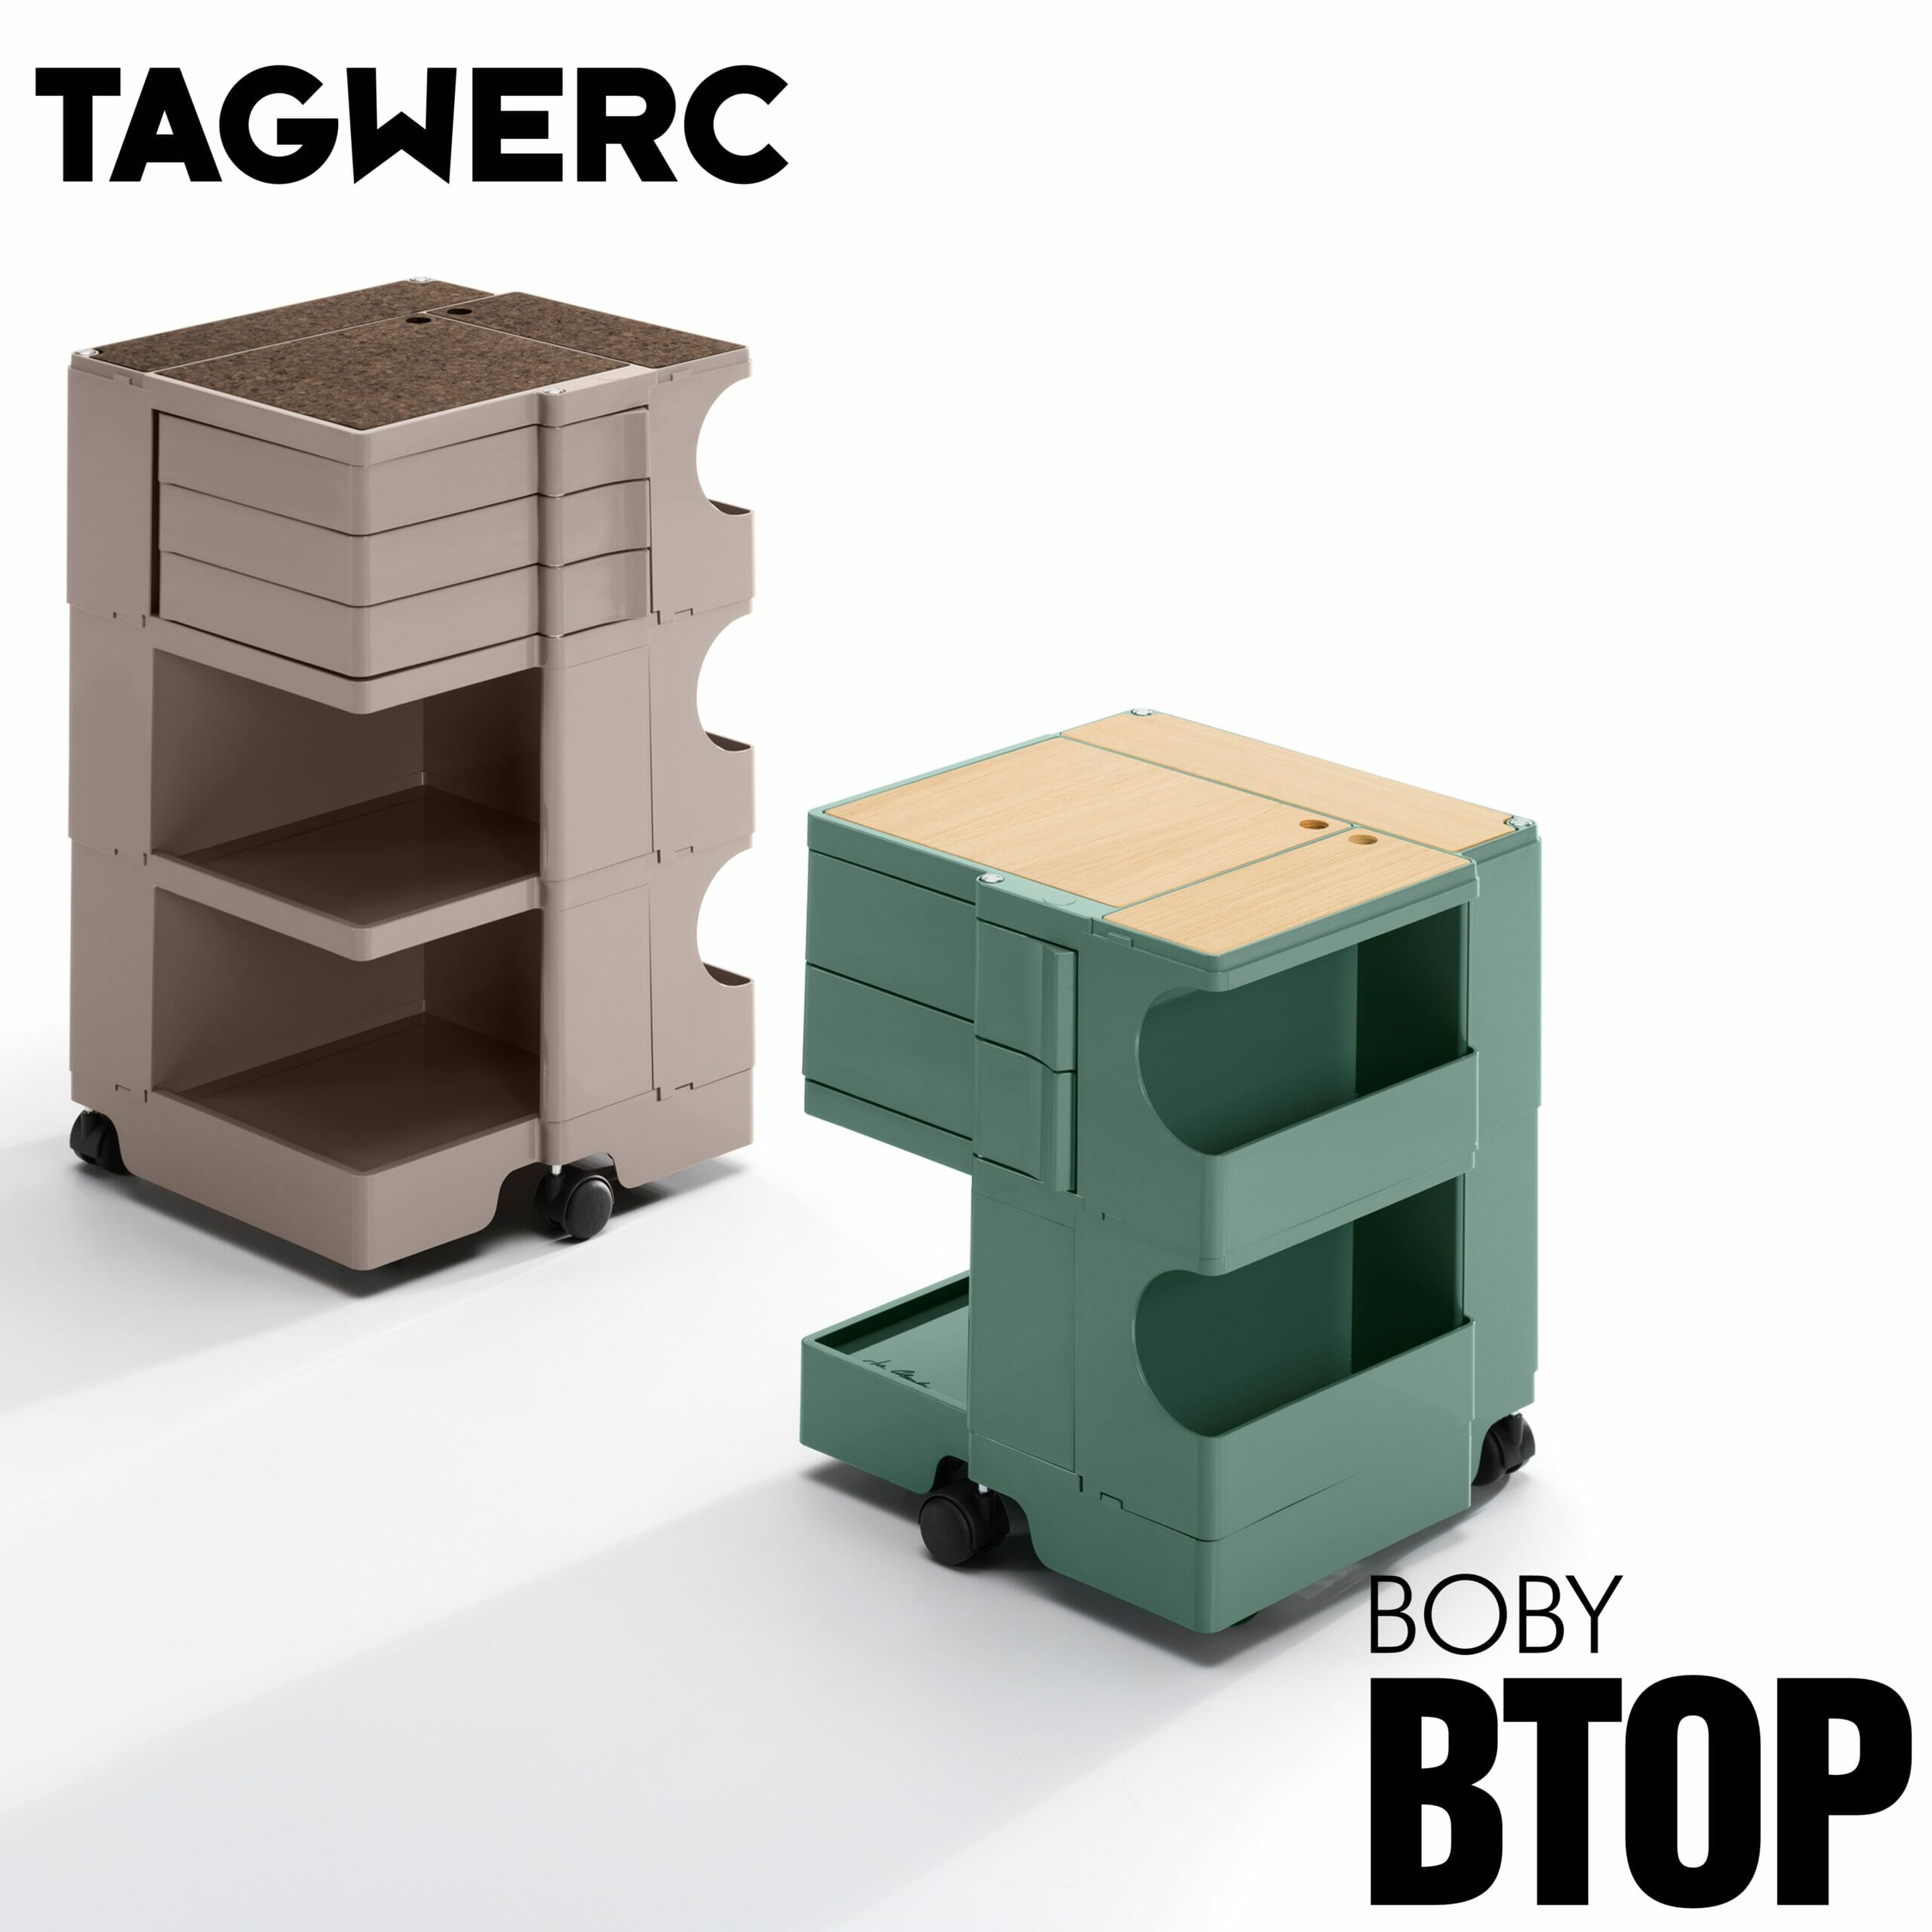 BTOP Eiche Auflage - Natur Rollcontainer Boby B—Line für